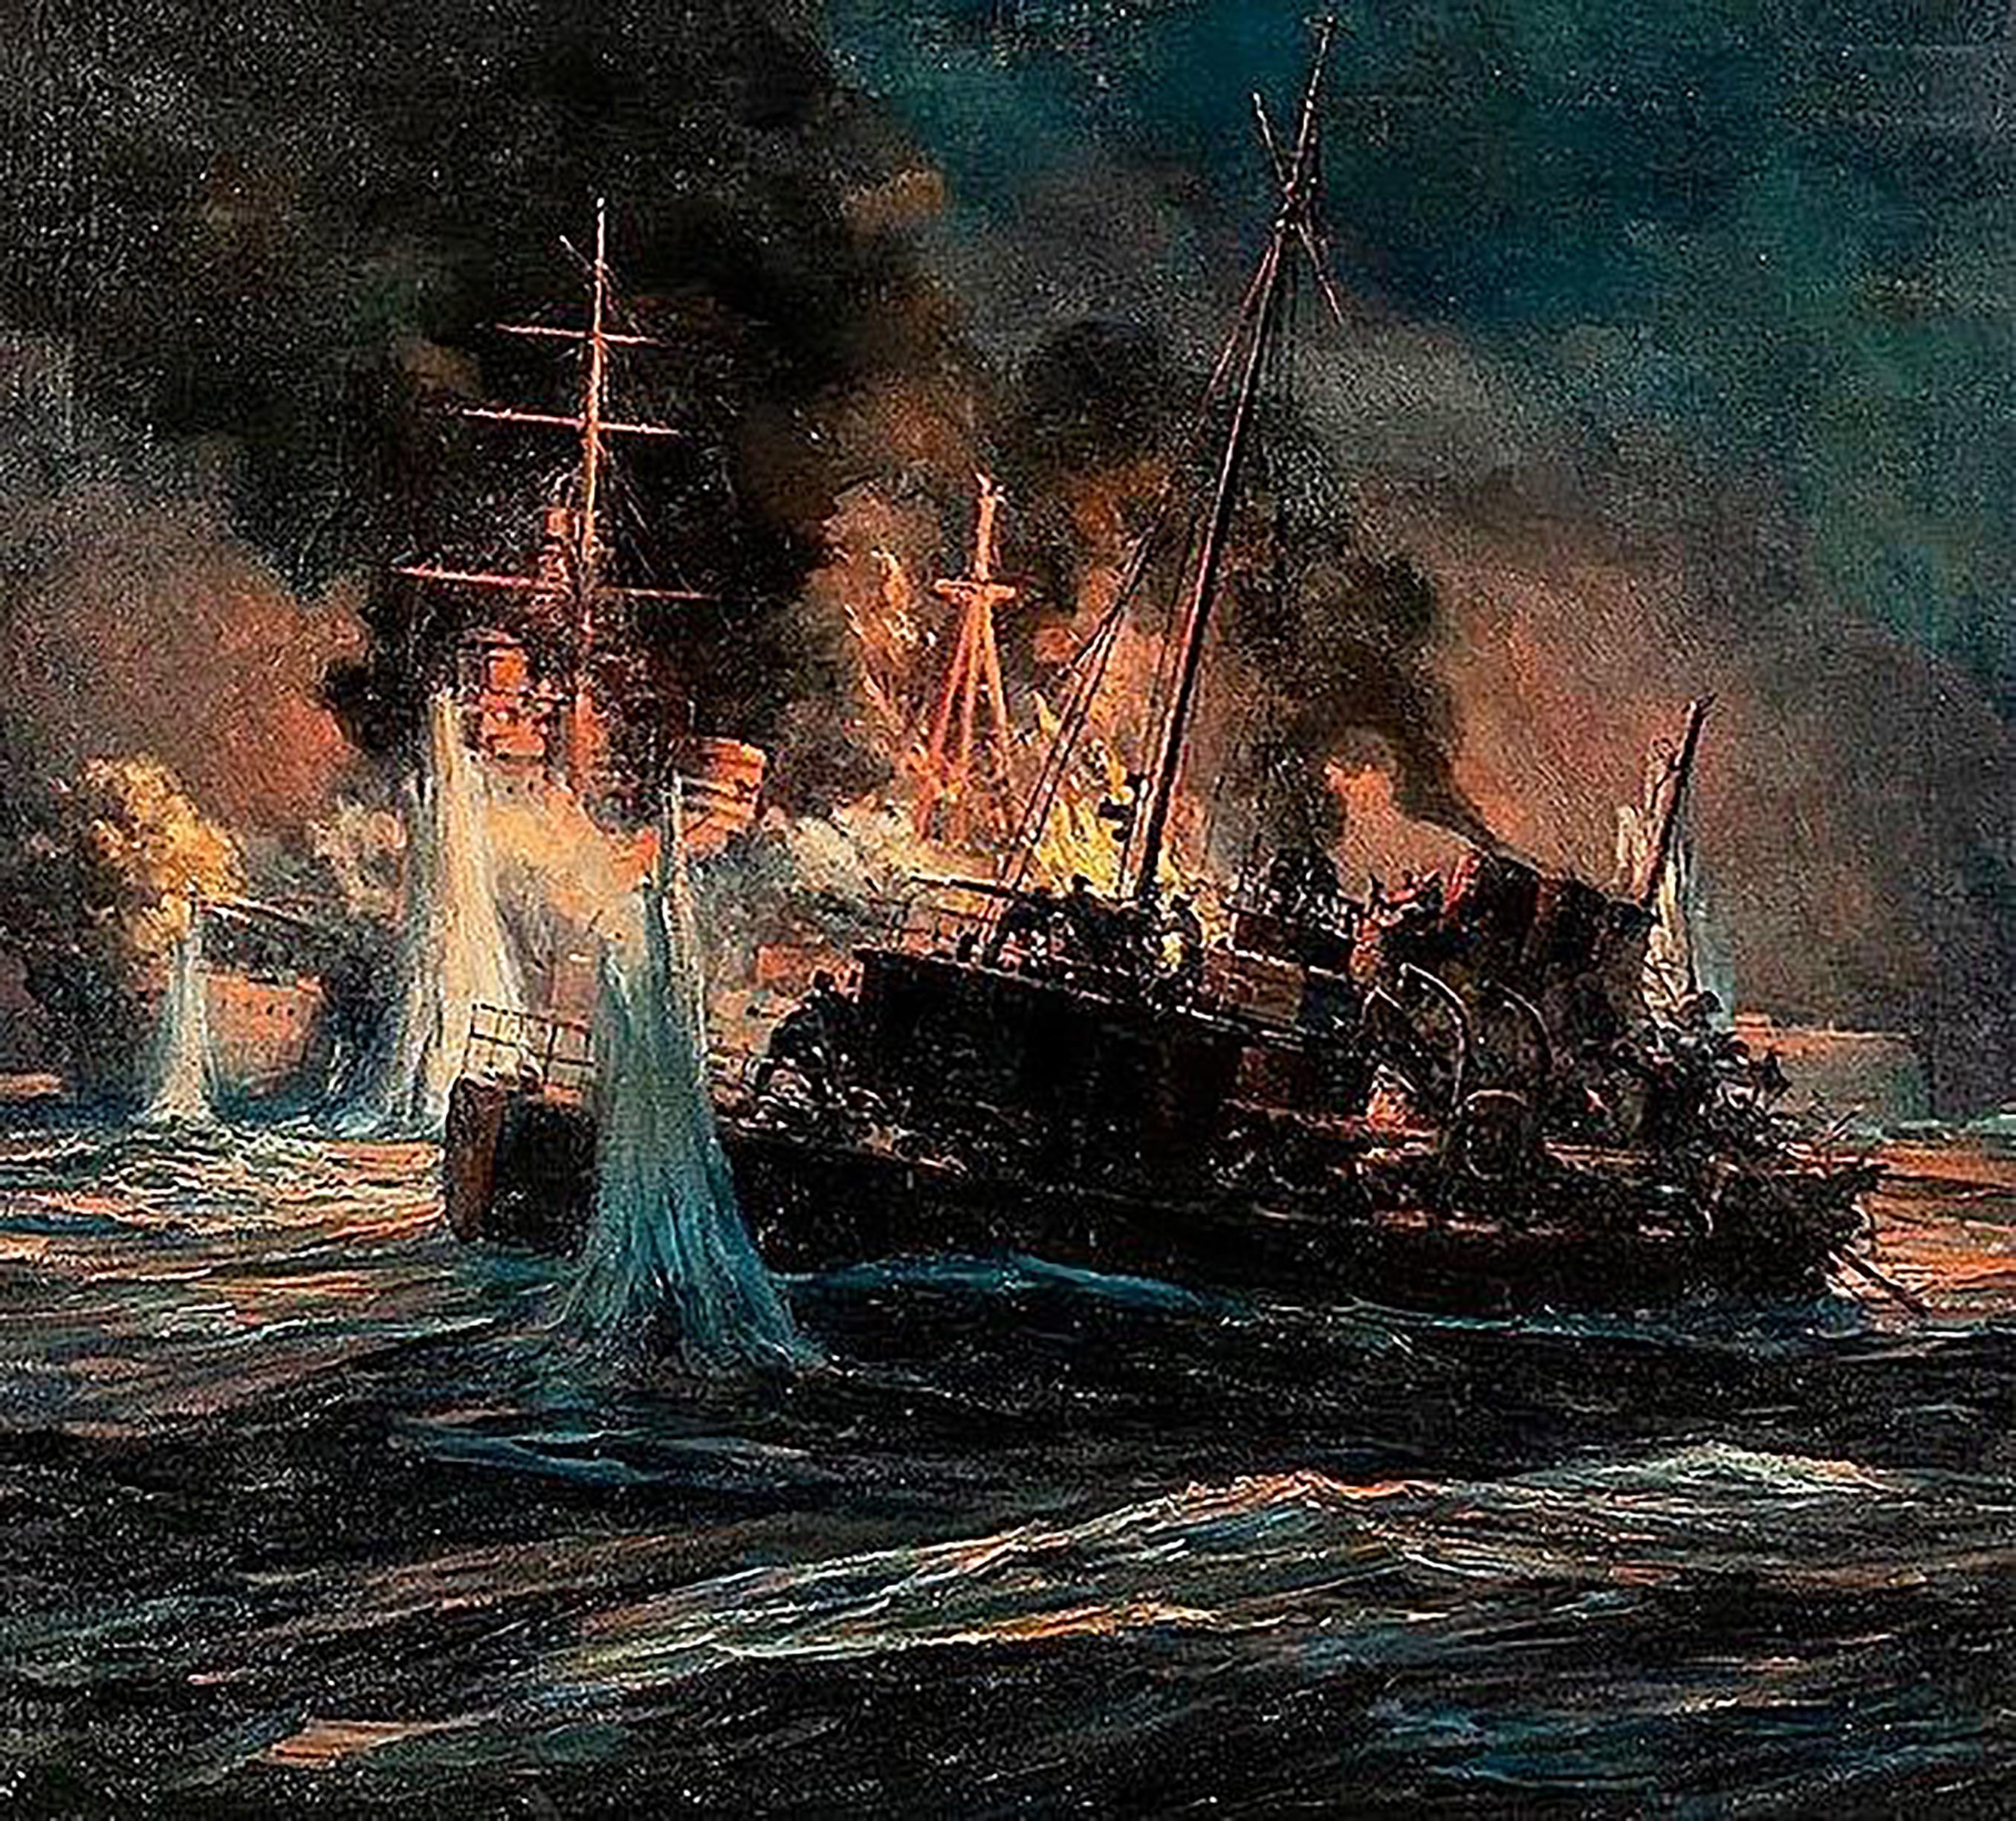 Anton Otto Fischer Figurative Painting - World War II Naval Engagement